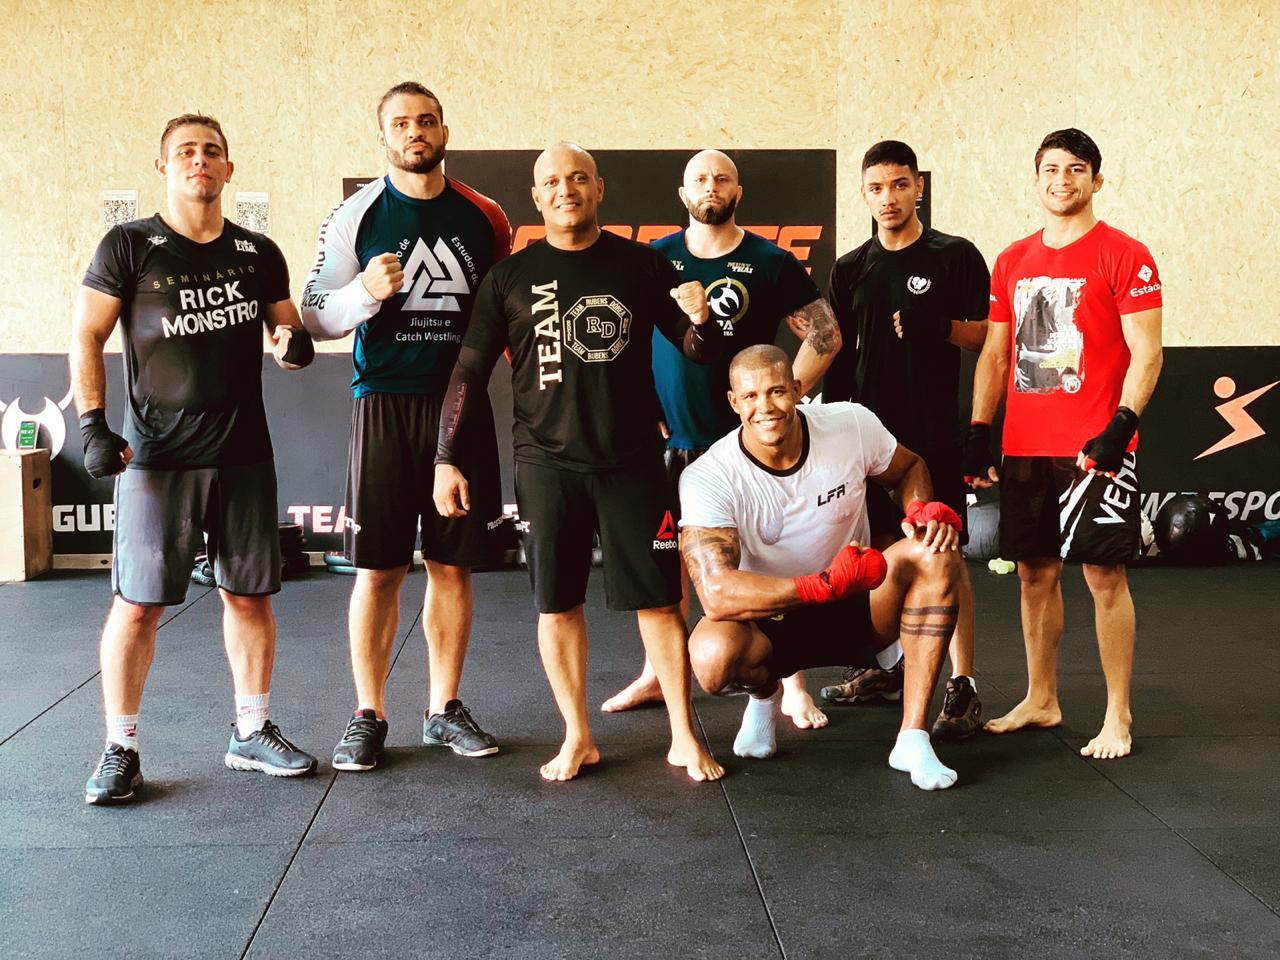 Ex-UFC e campeão do Taura, Rick Monstro fala sobre trabalho na Team Nogueira em São Paulo: ‘Estamos crescendo’